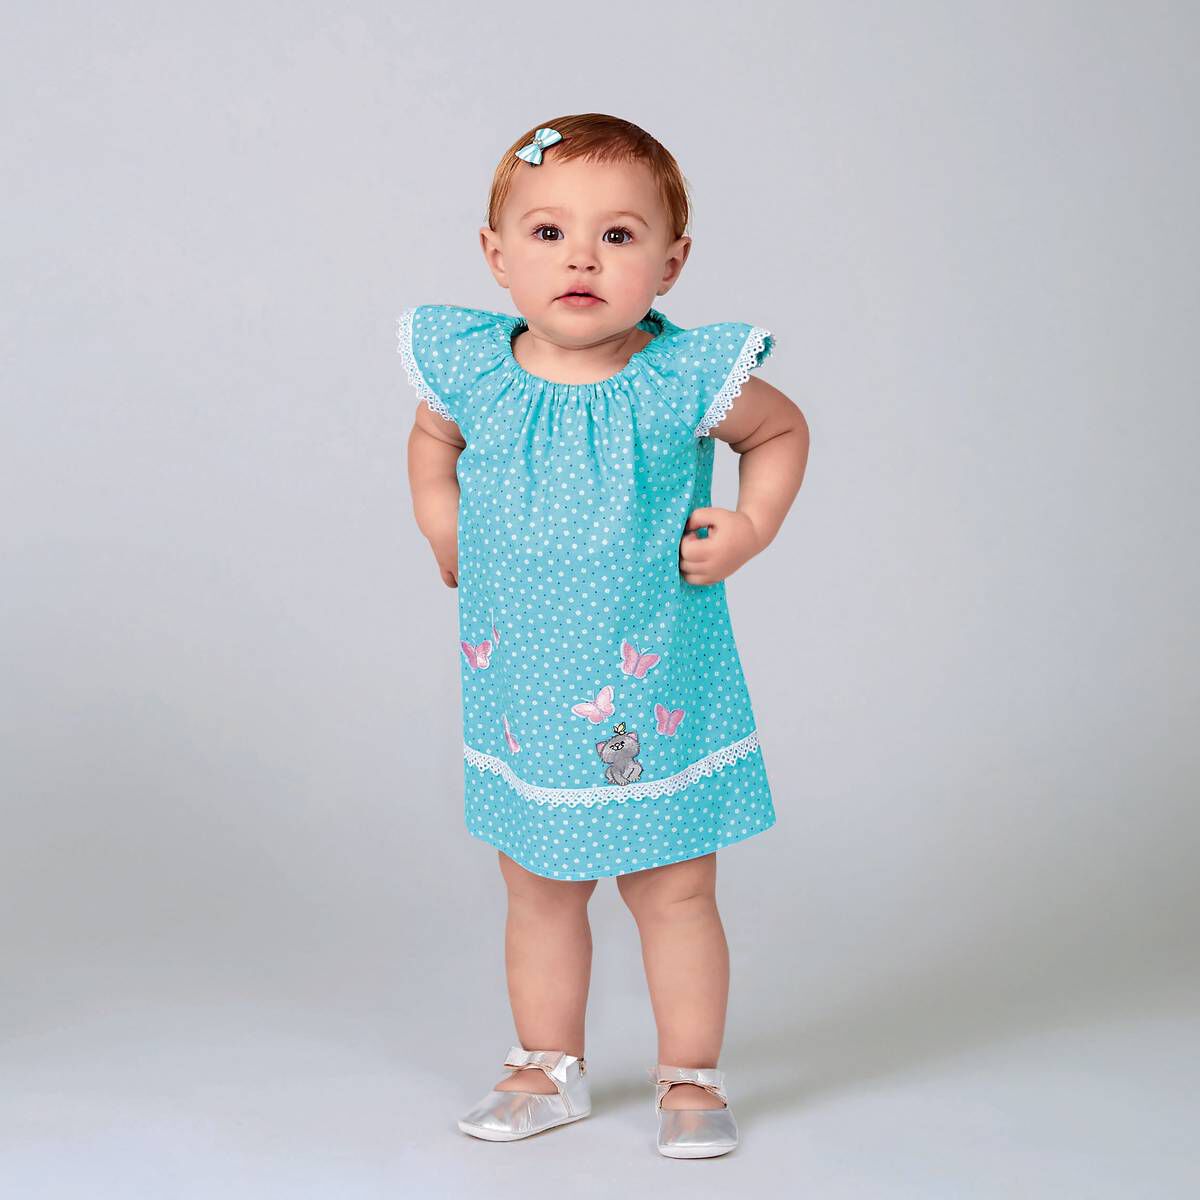 New Look Babies’ Dress Sewing Pattern N6663 | Hobbycraft